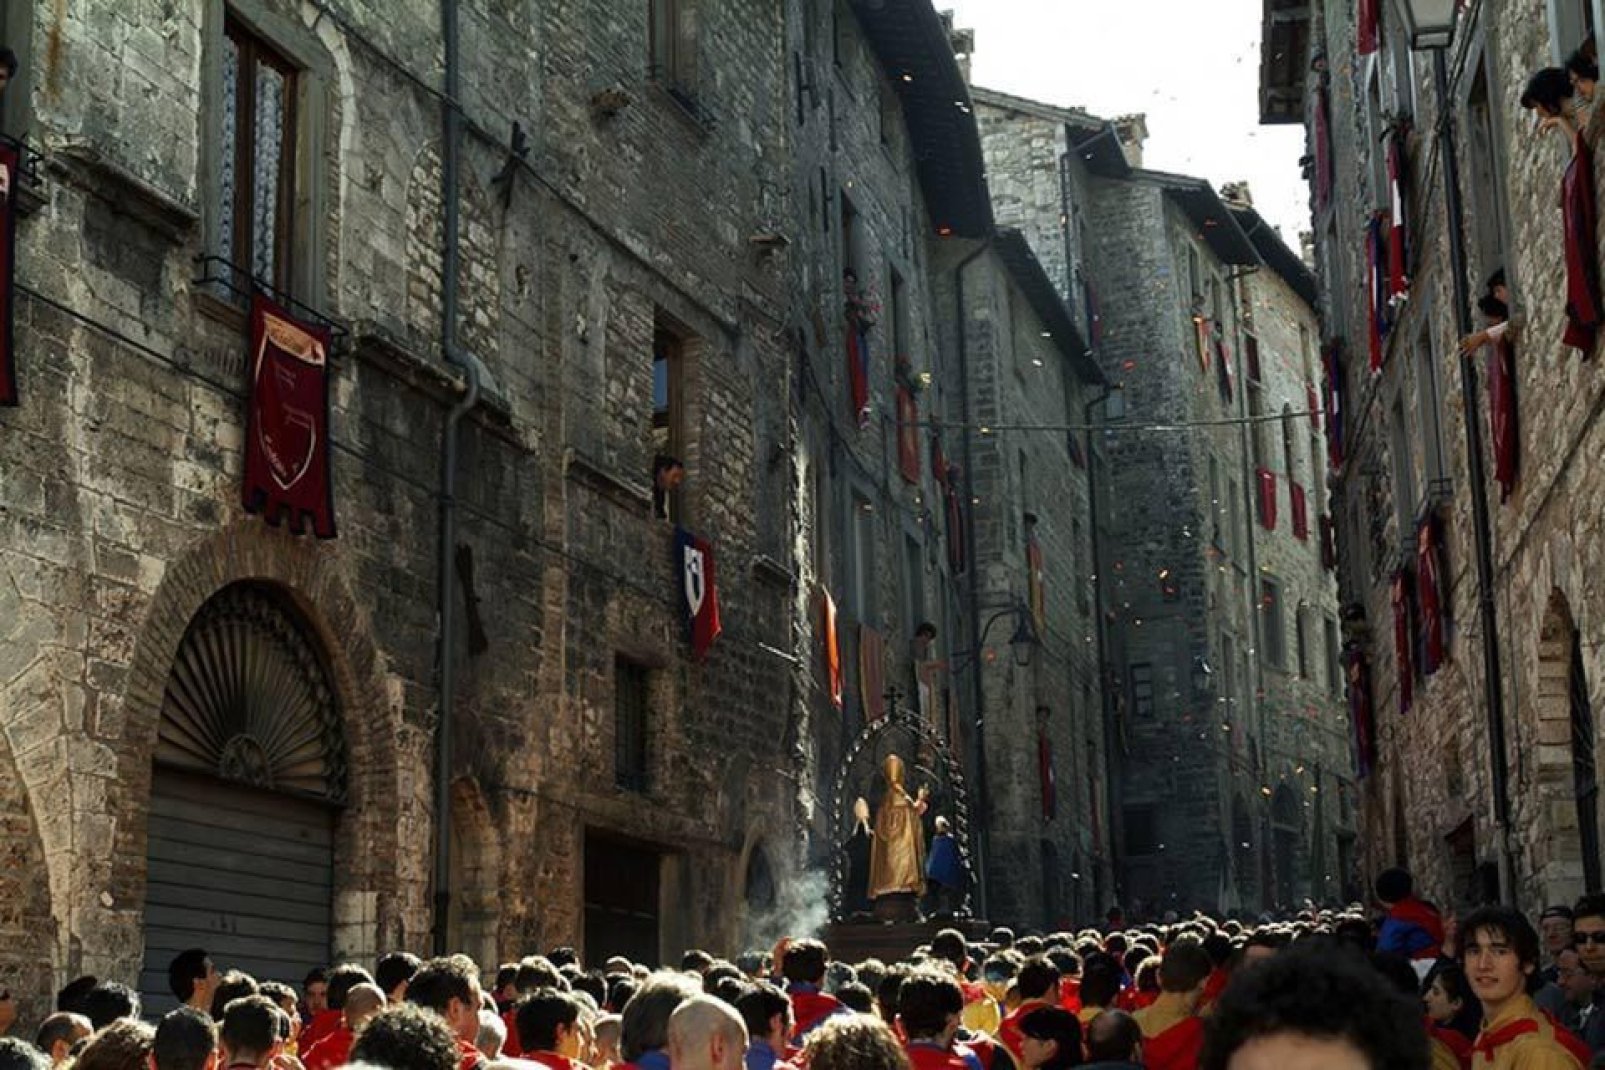 La Festa dei Ceri se déroule le 15 mai à Gubbio : il s'agit traditionnellement d'une fête en l'honneur de Saint Ubaldo Baldassini, évêque et patron de la ville.